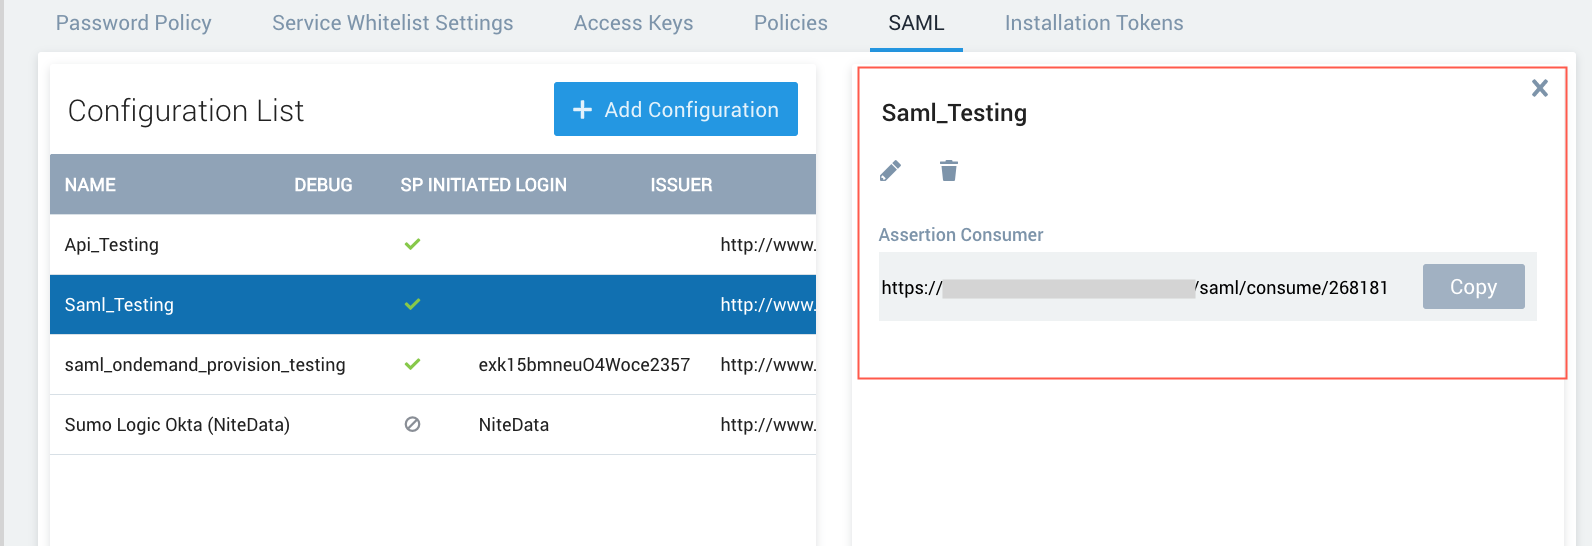 saml-config-details2.png